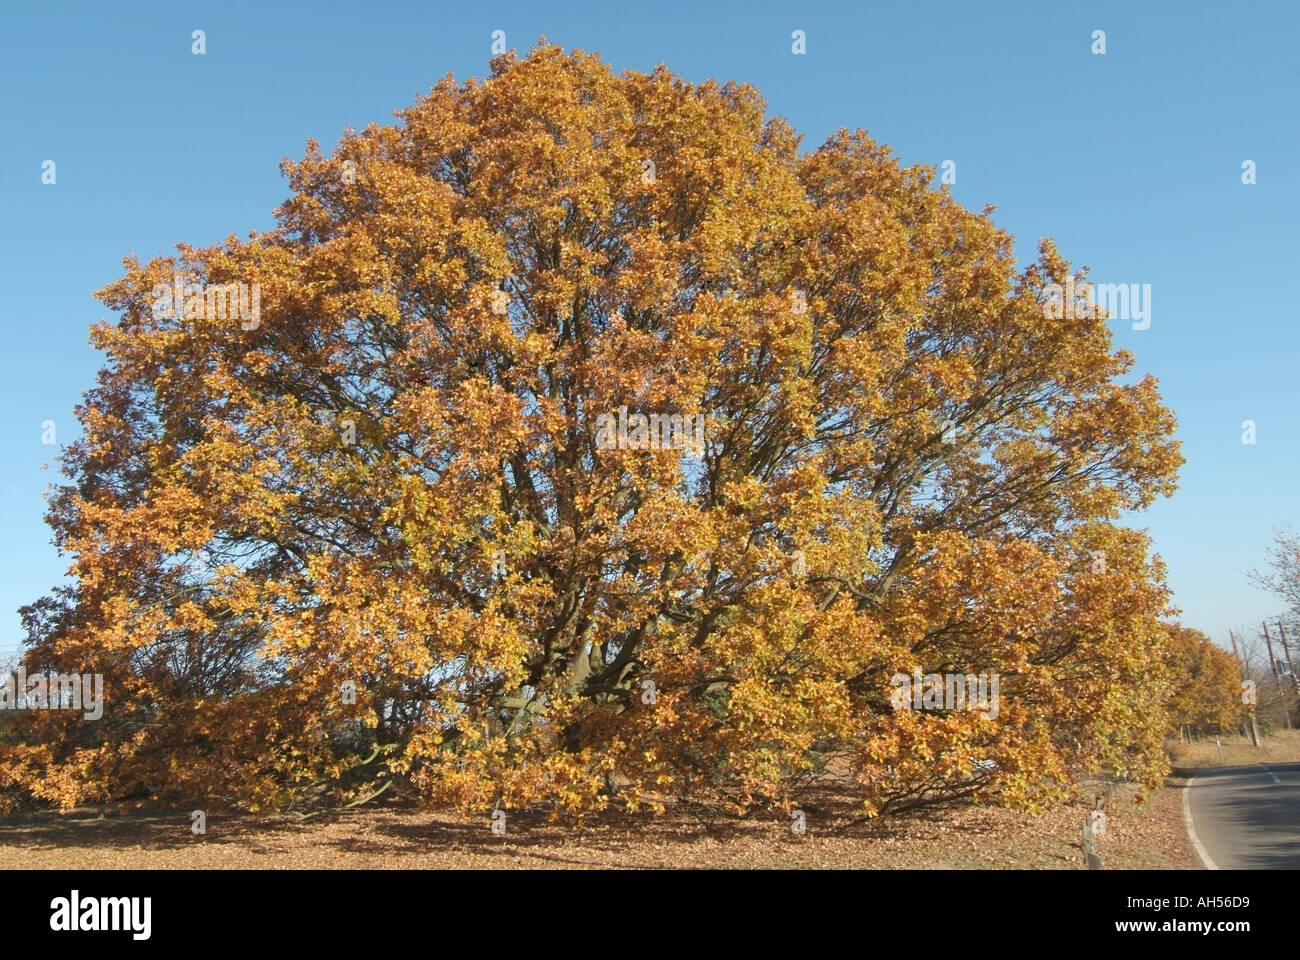 Fryerning près de Ingatestone Essex grand chêne automne Banque D'Images